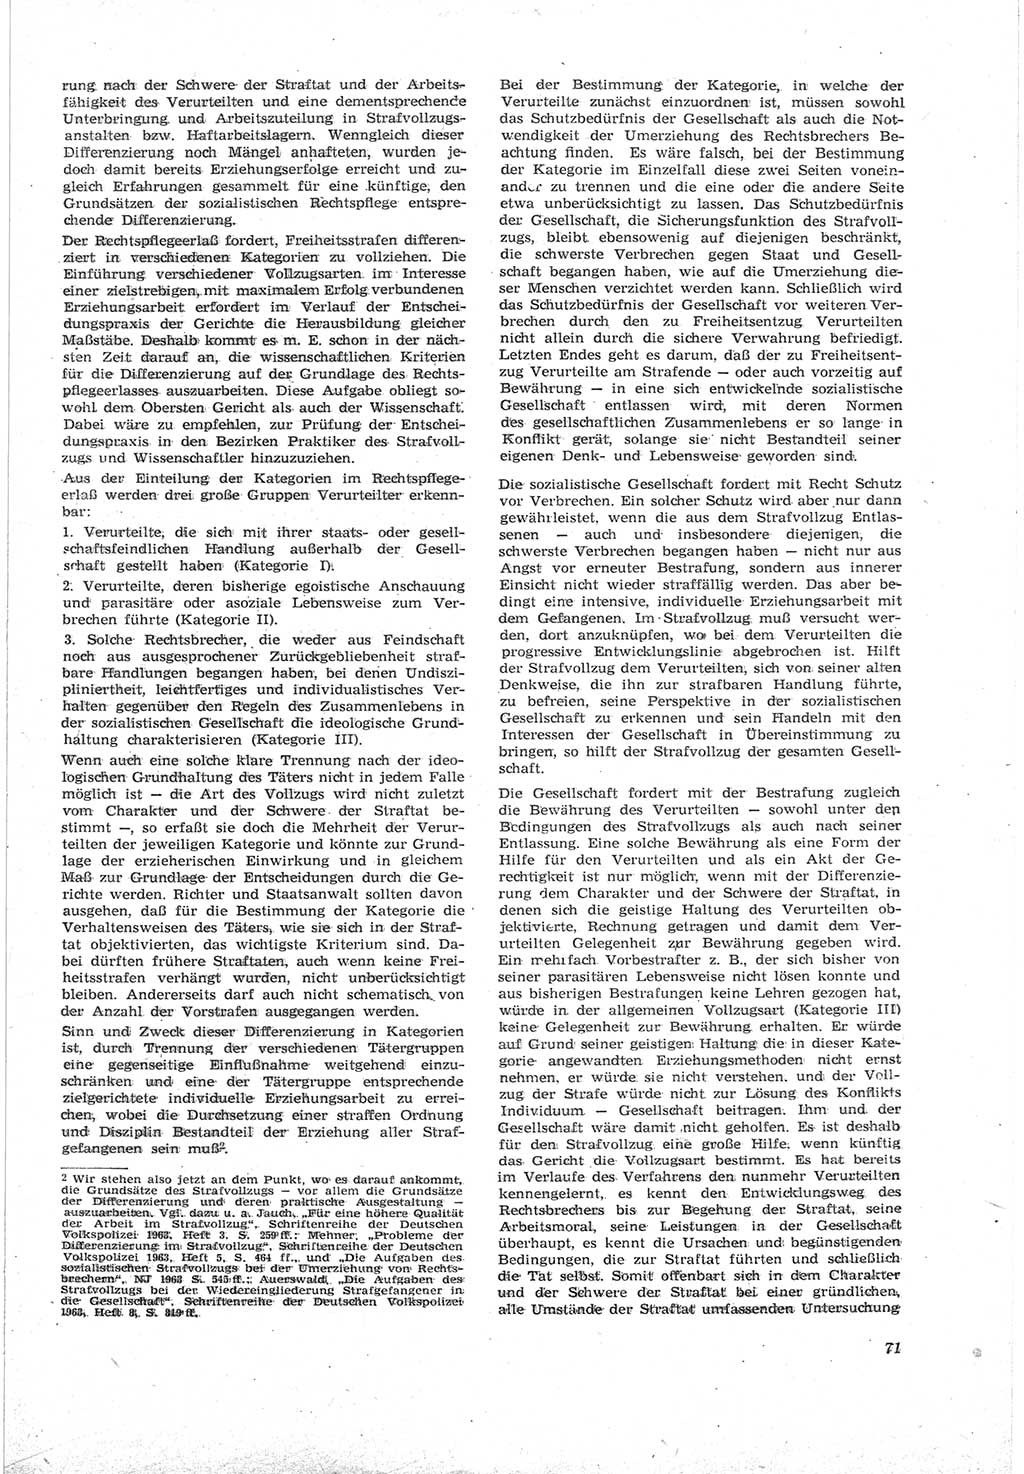 Neue Justiz (NJ), Zeitschrift für Recht und Rechtswissenschaft [Deutsche Demokratische Republik (DDR)], 18. Jahrgang 1964, Seite 71 (NJ DDR 1964, S. 71)